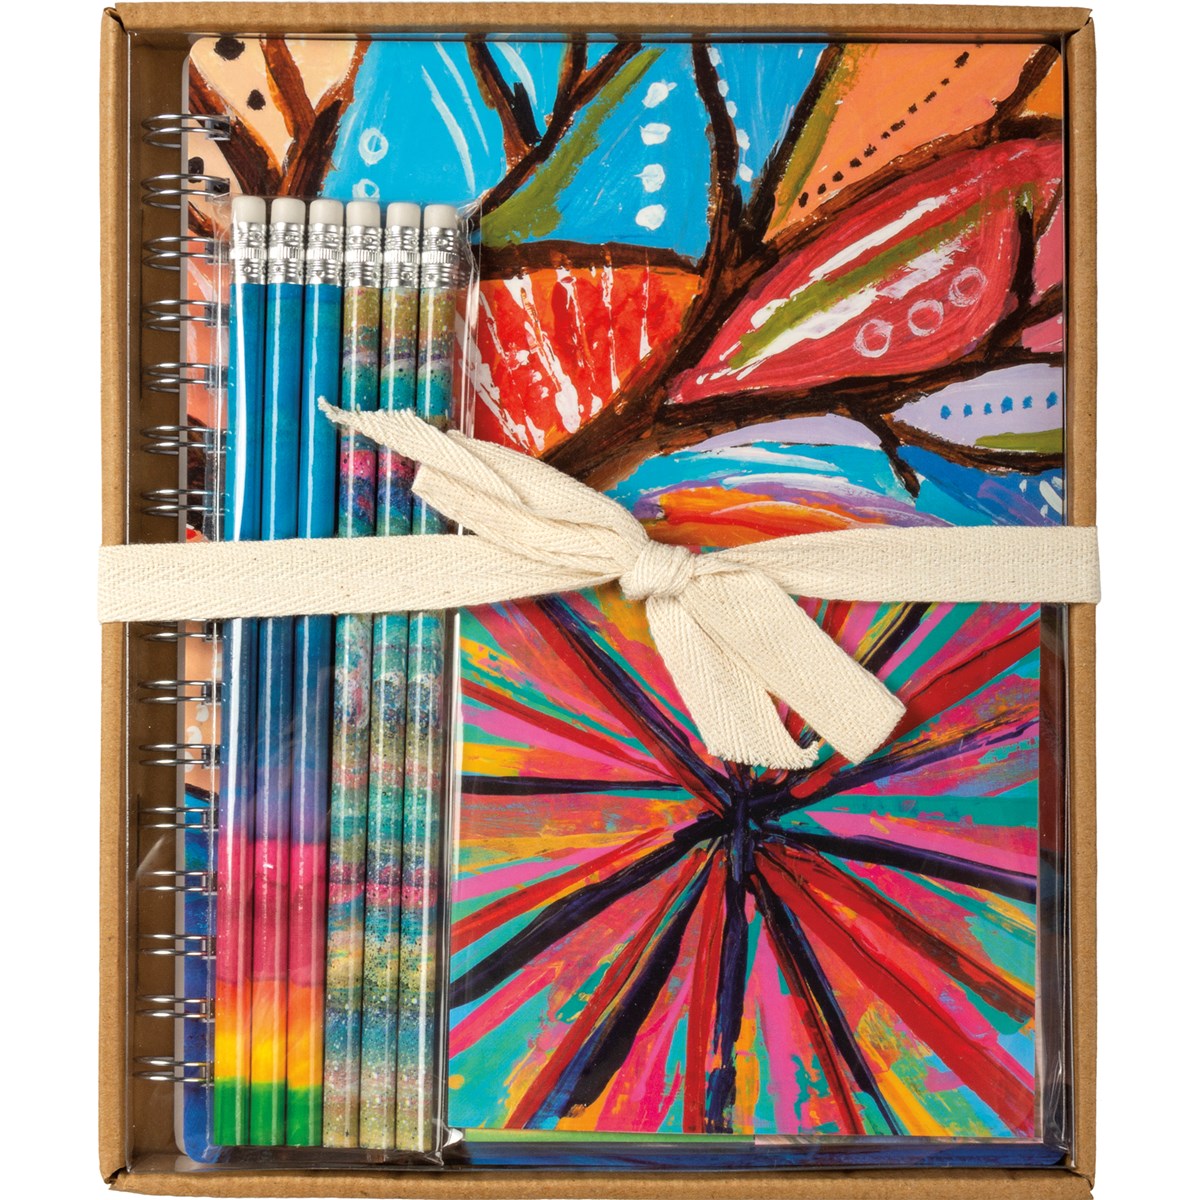 Stationery Set - Rainbow - Box: 8" x 9.50" x 0.75" - Paper, Metal, Wood